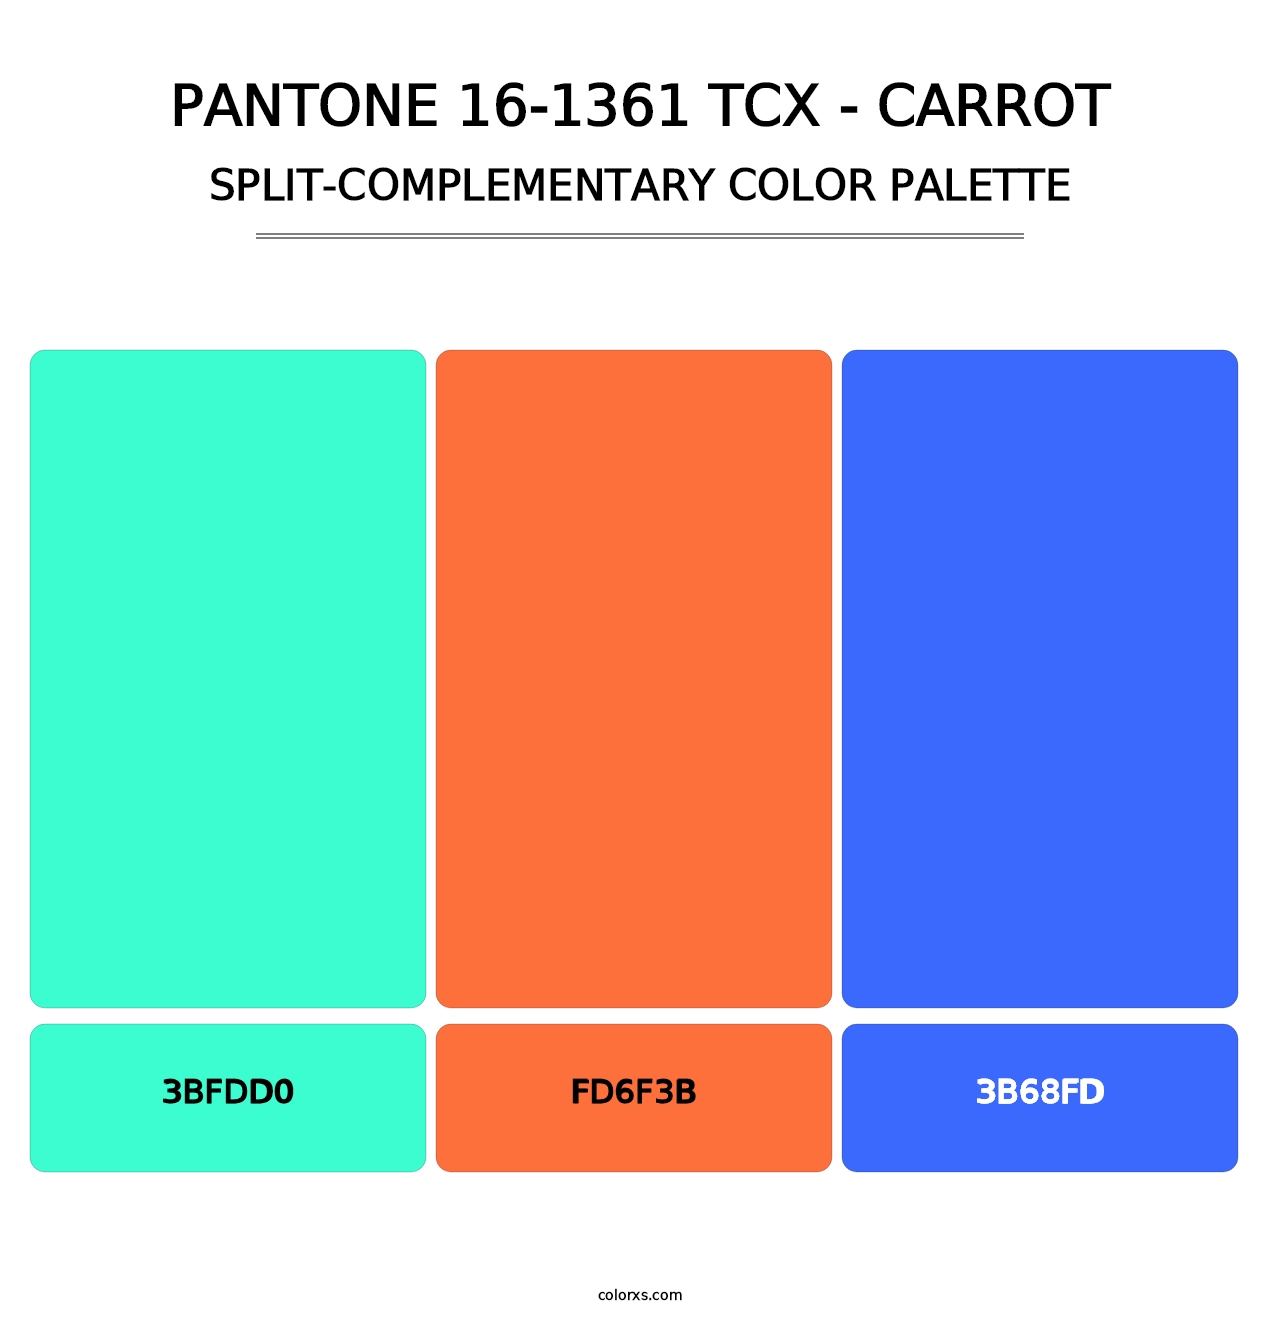 PANTONE 16-1361 TCX - Carrot - Split-Complementary Color Palette